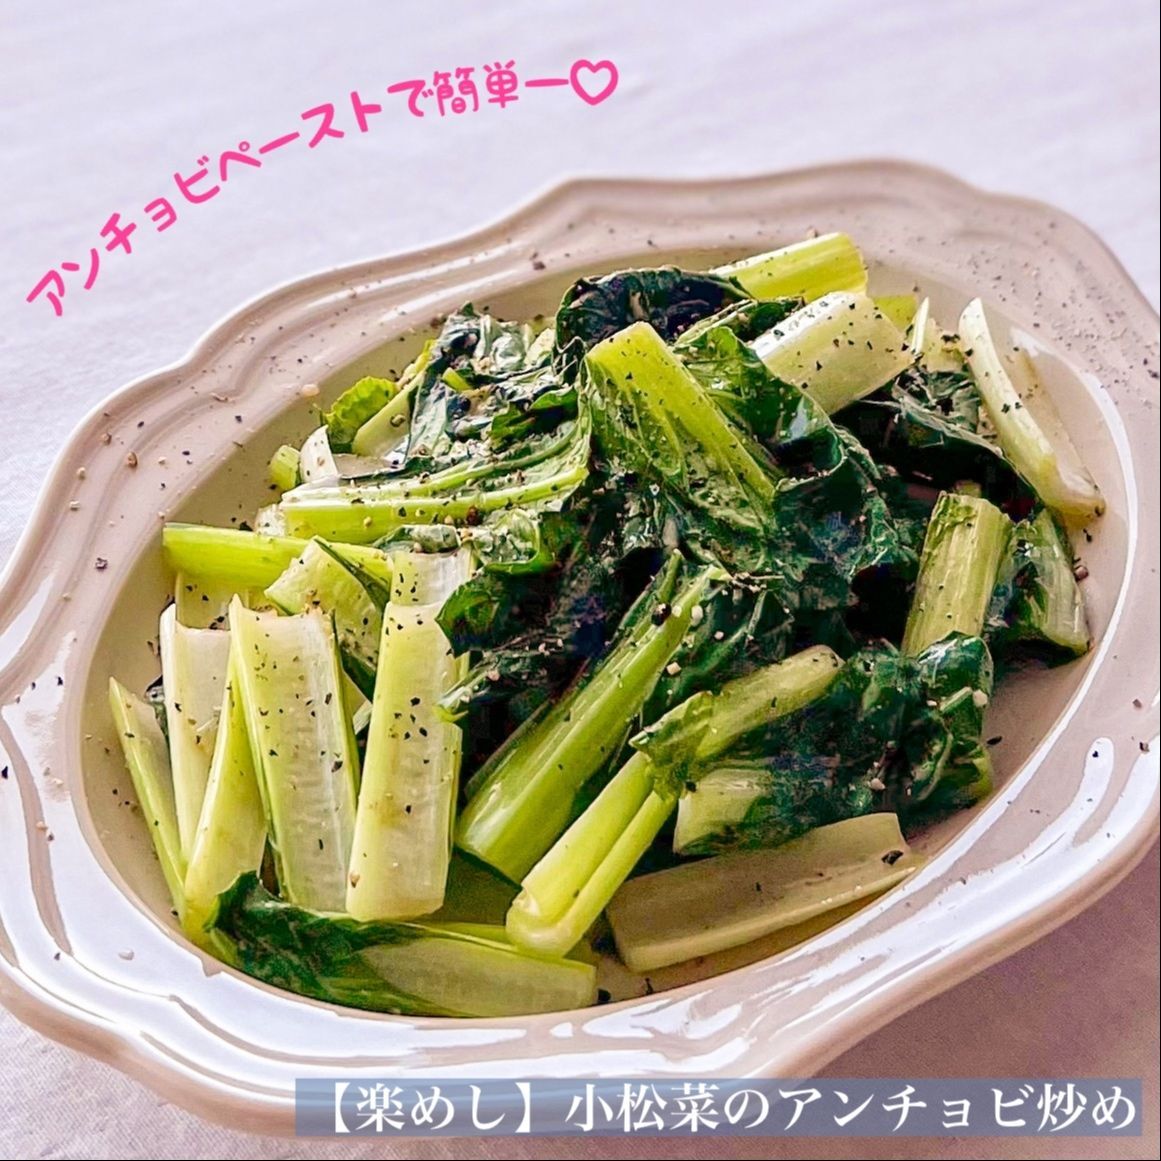 【楽めし】小松菜のアンチョビ炒め